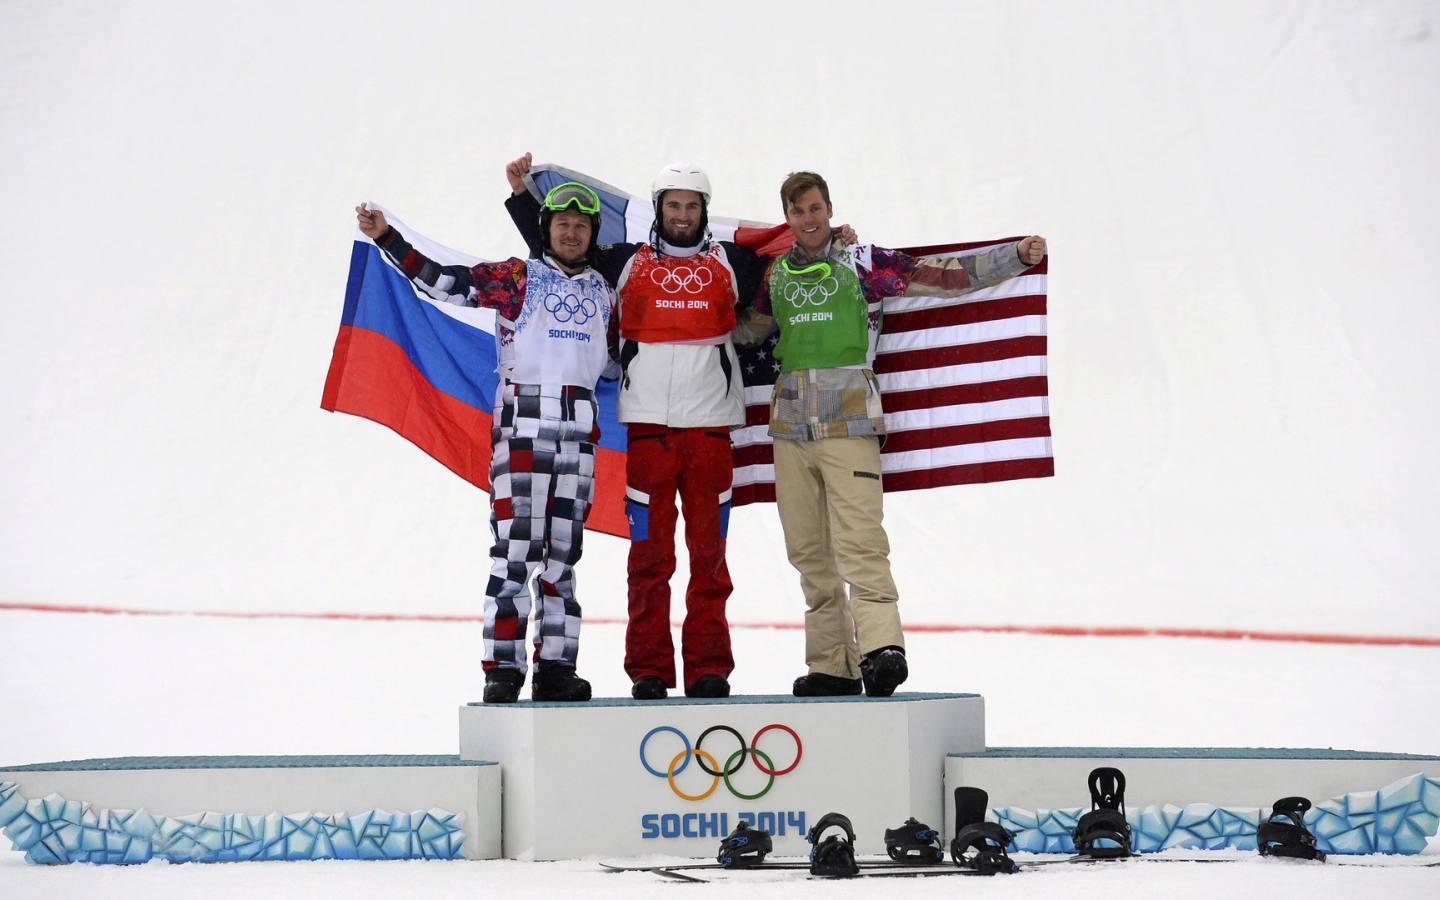 Обладатель серебряной медали в дисциплине сноуборд Николай Олюнин на олимпиаде в Сочи